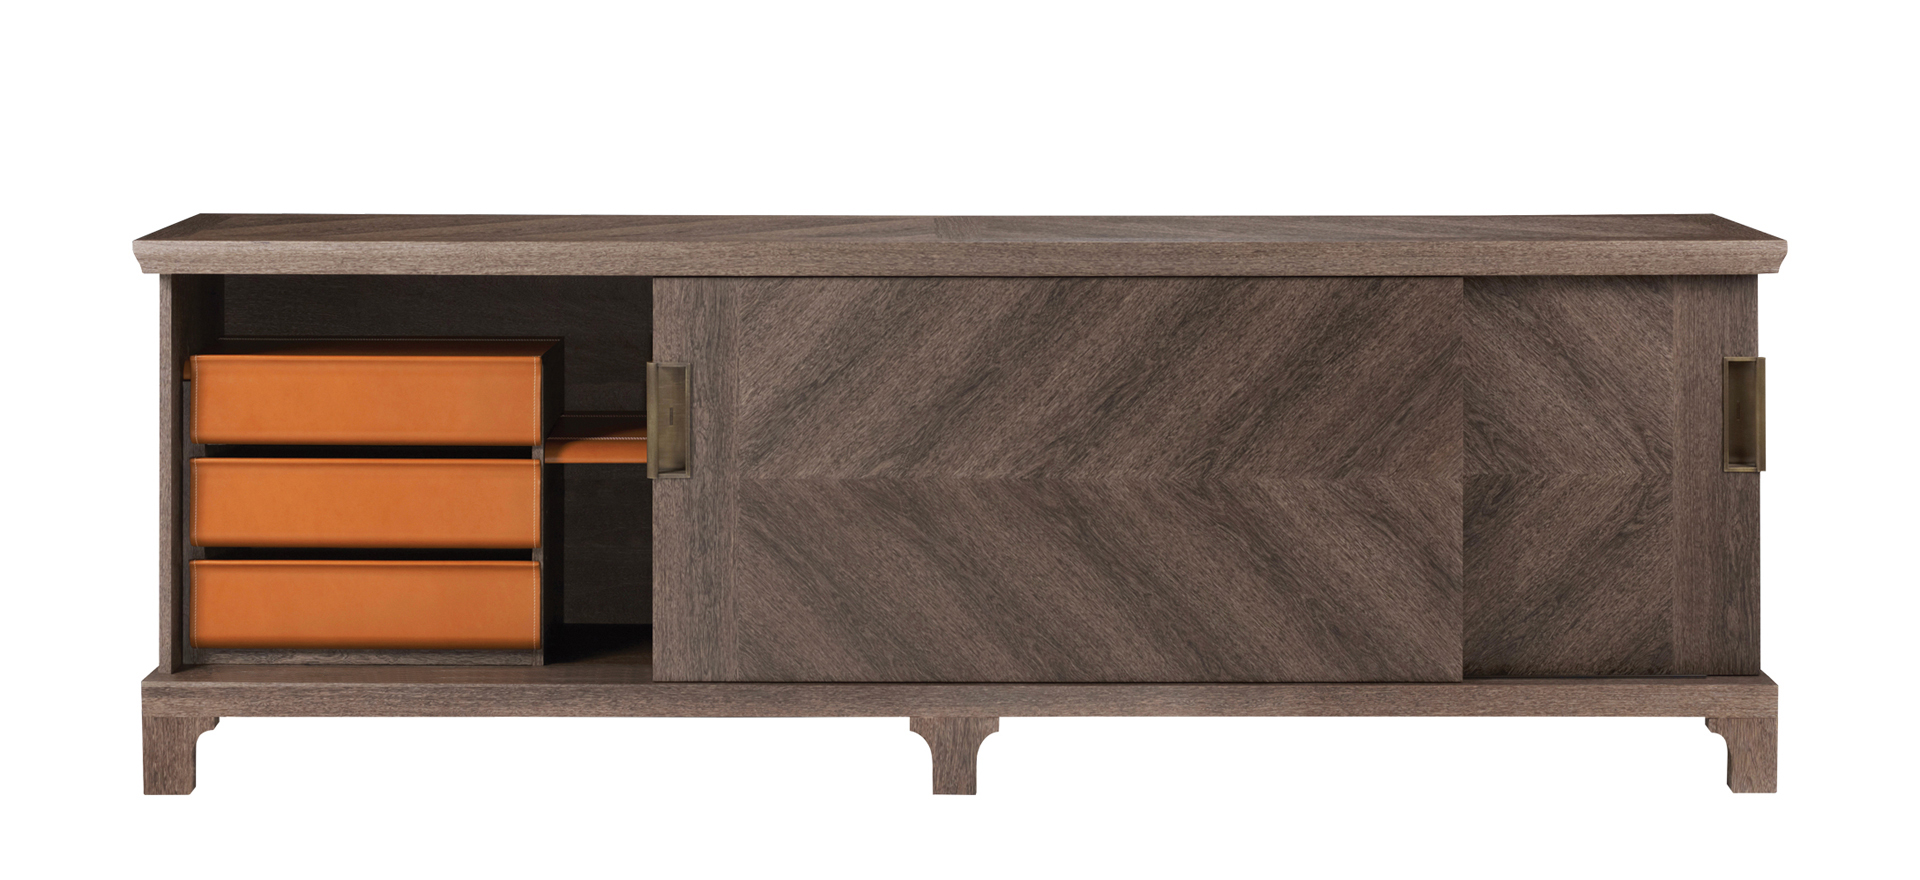 Oolong è un mobile contenitore basso in legno con ante scorrevoli, frontali dei ripiani e cassetti in pelle e maniglie in bronso, del catalogo di Promemoria | Promemoria